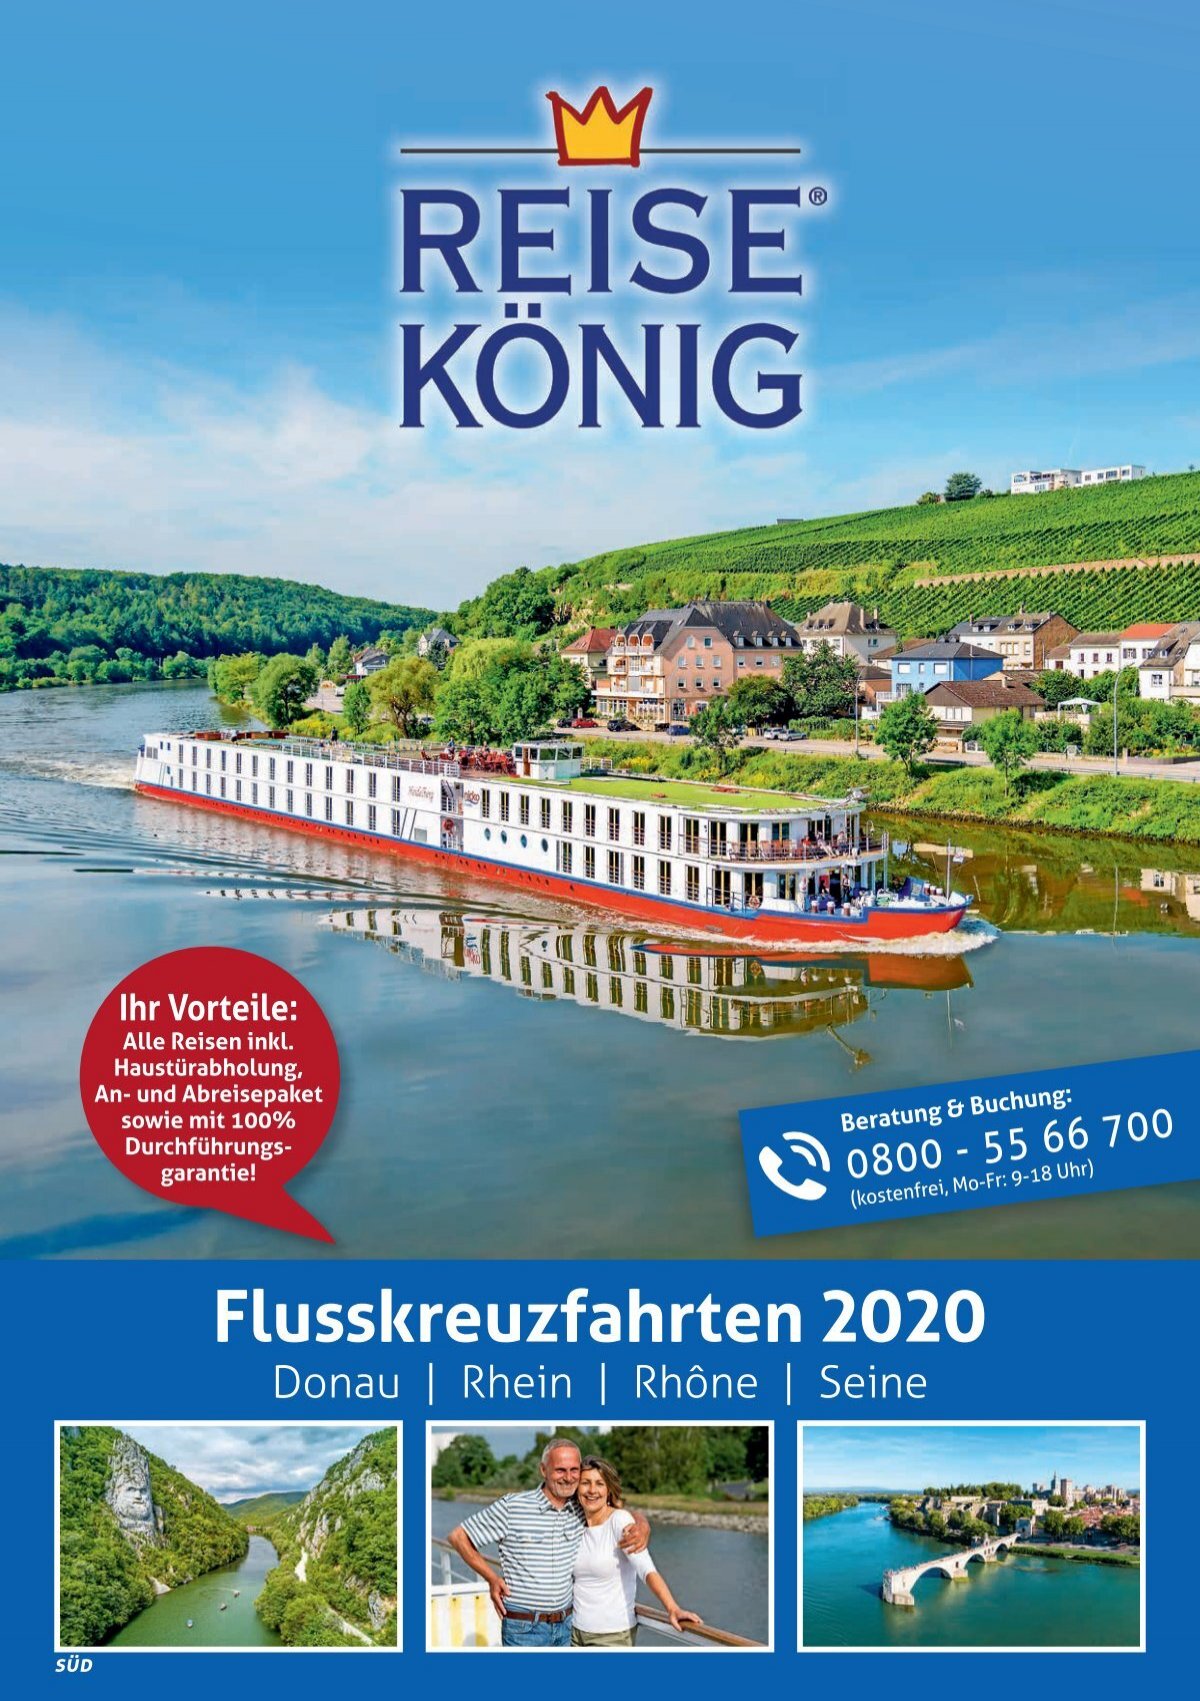 Reise König Flusskreuzfahrten 2020